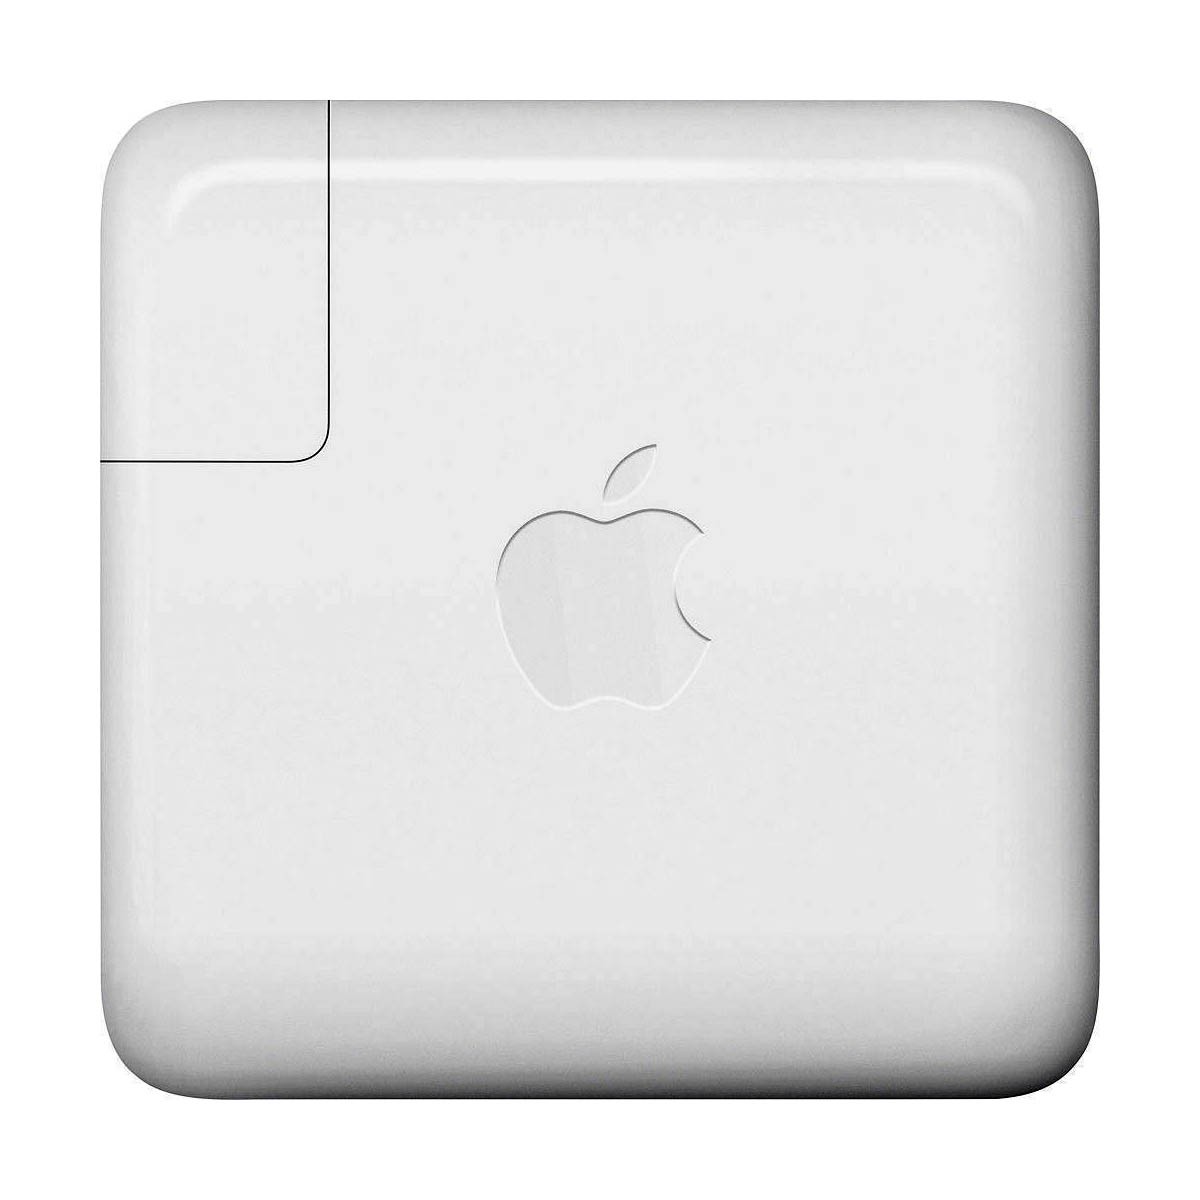 Apple (original) 30W USB-C Power Adapter (A1882) - A1882